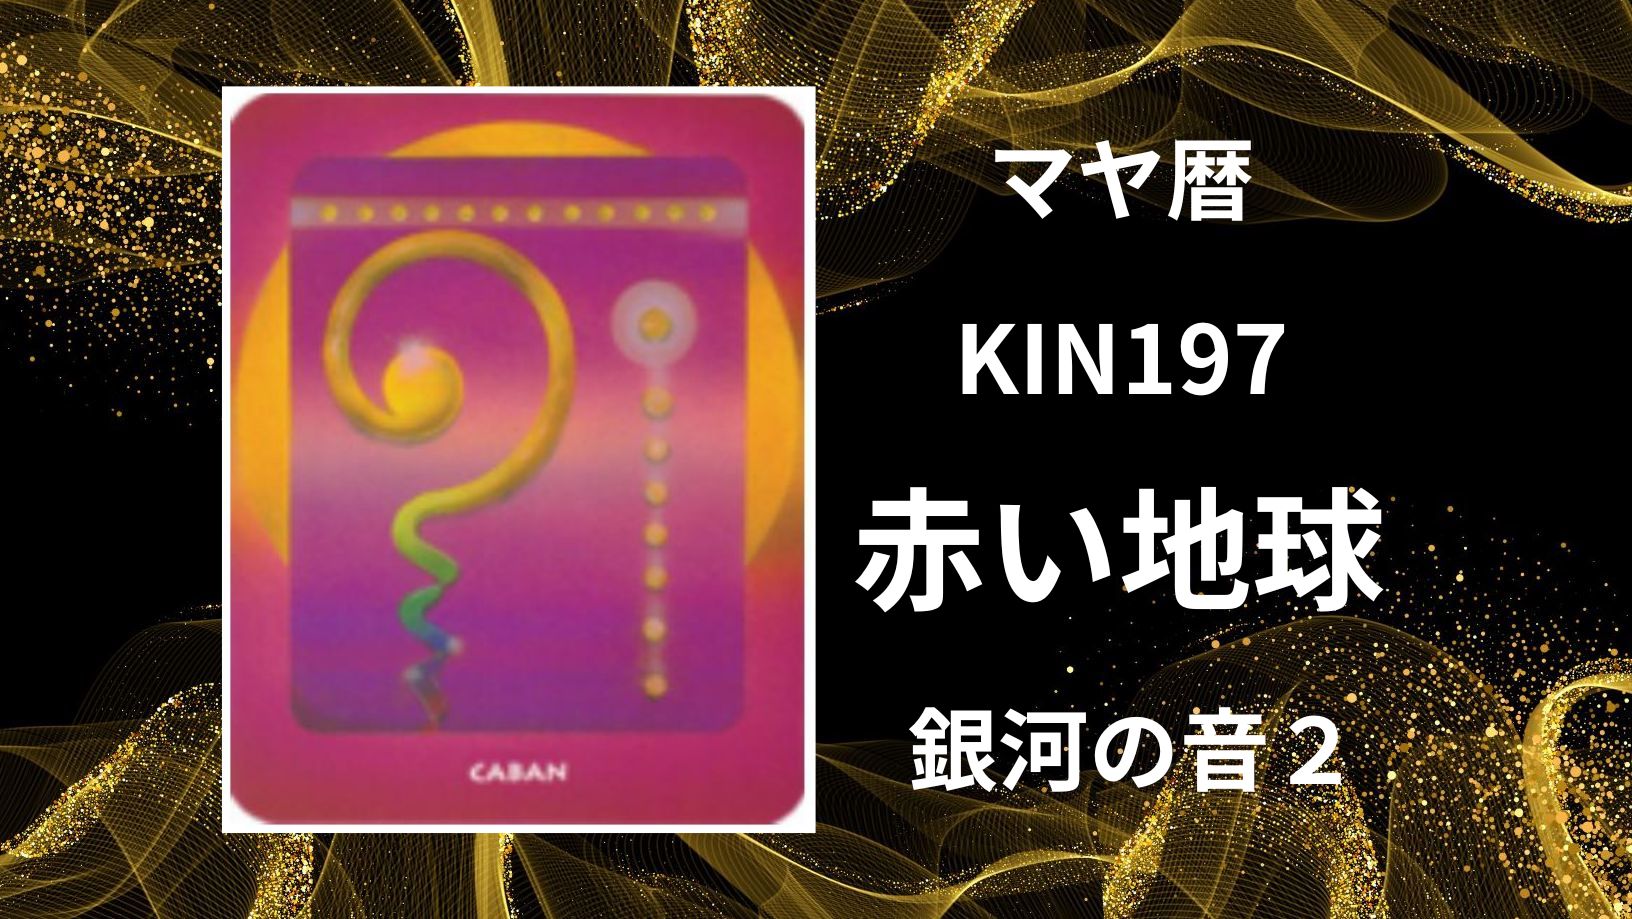 【マヤ暦-今日はどんな日】KIN197「赤い地球」のメッセージ